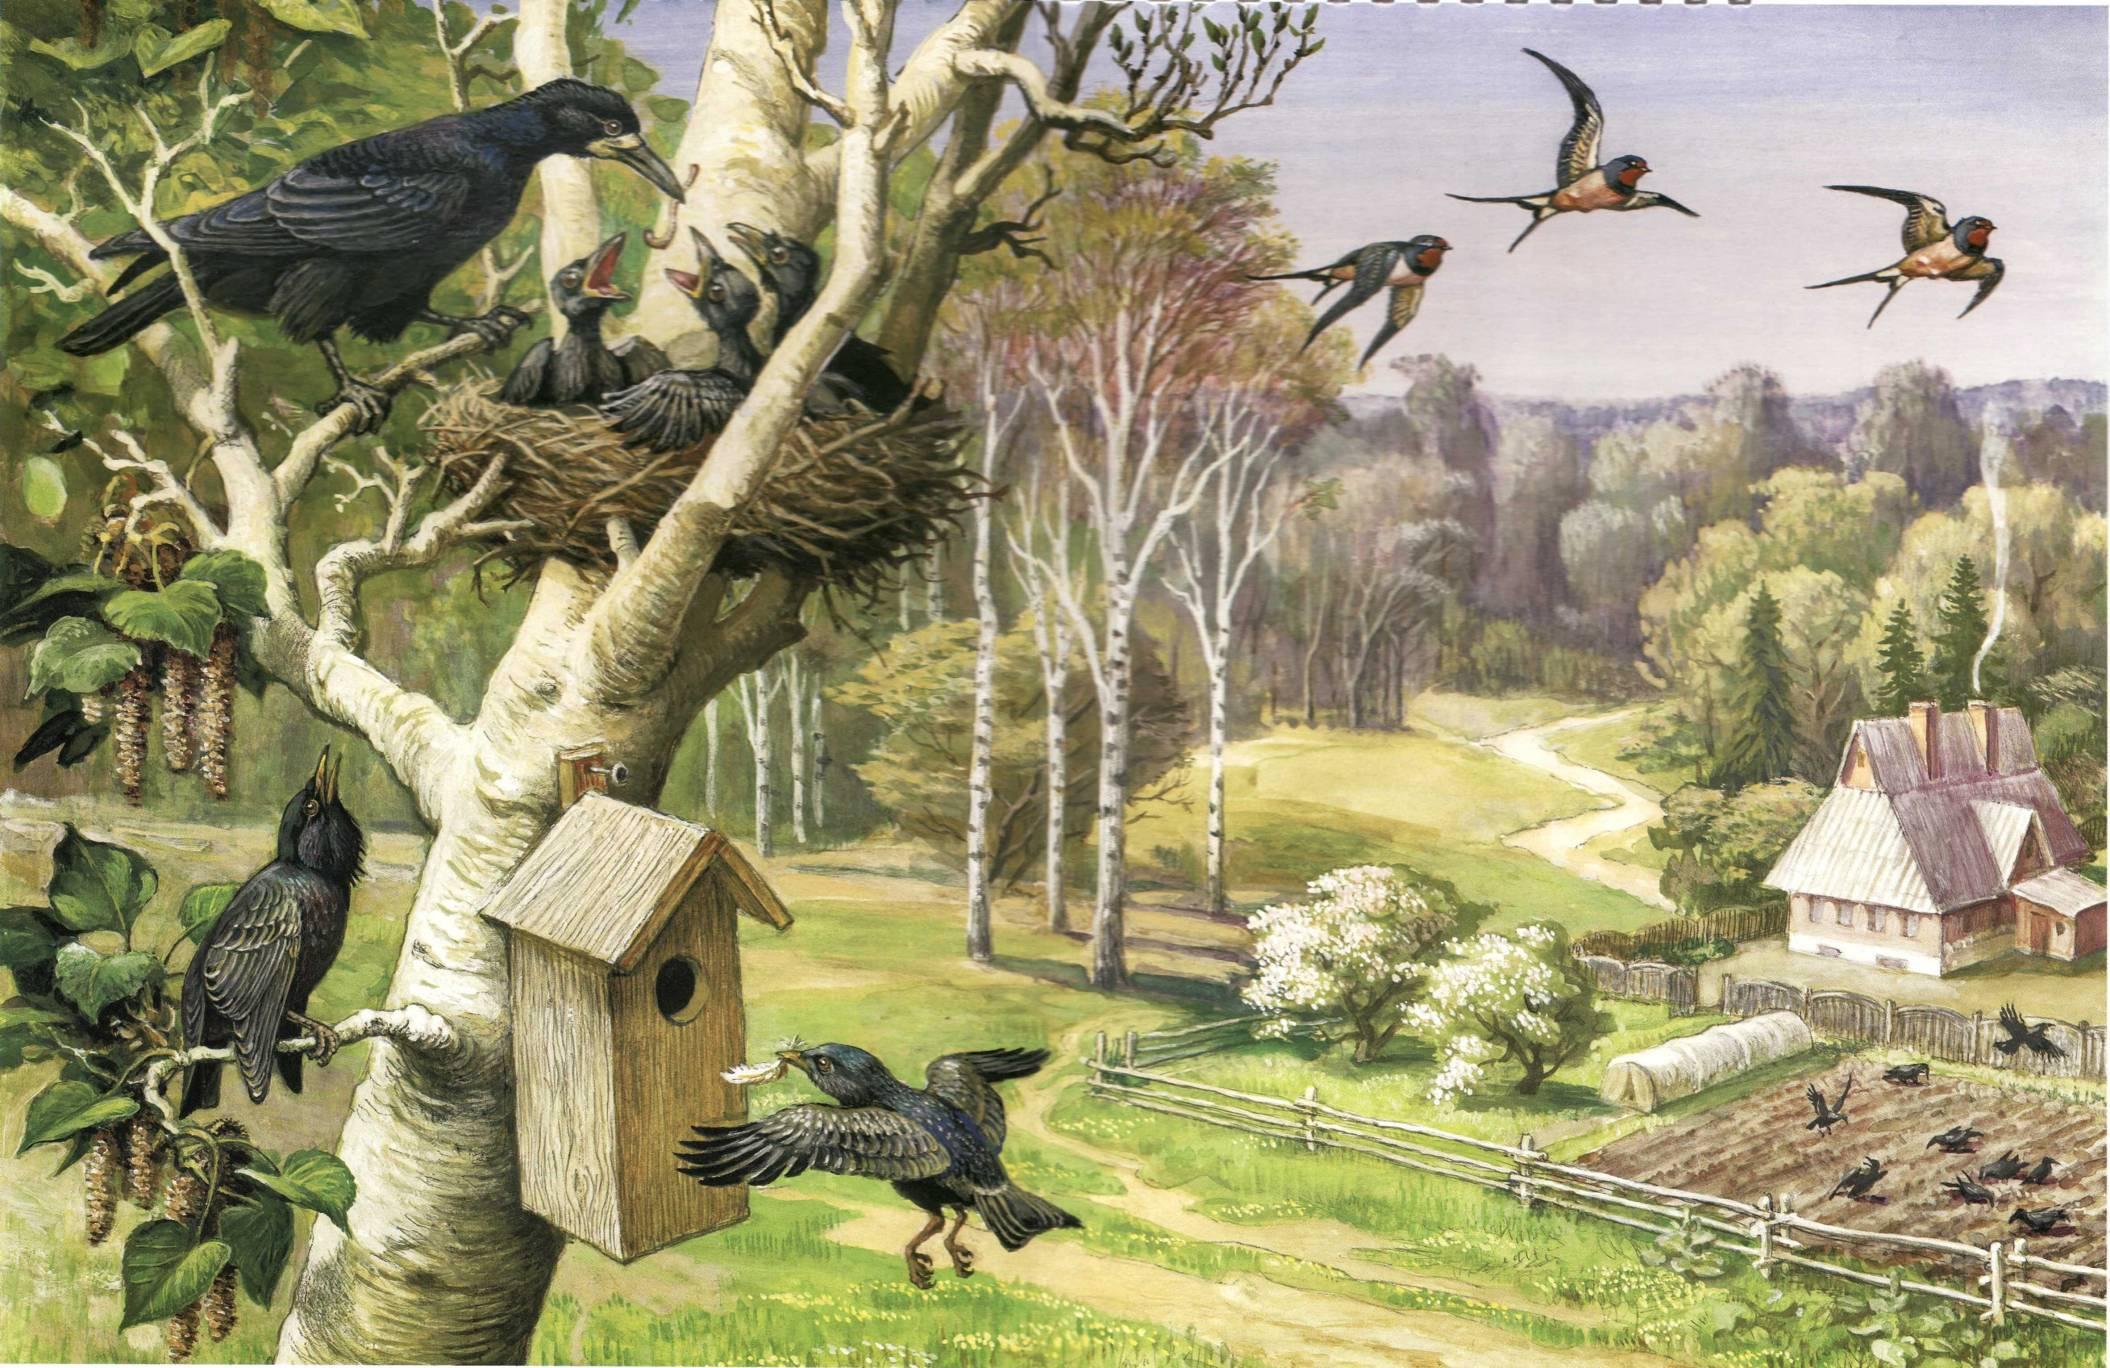 Встречаем перелетных птиц. Картина Артюшенко птицы весной. «Птицы весной» с.к.Артюшенко. Нищева перелетные птицы.